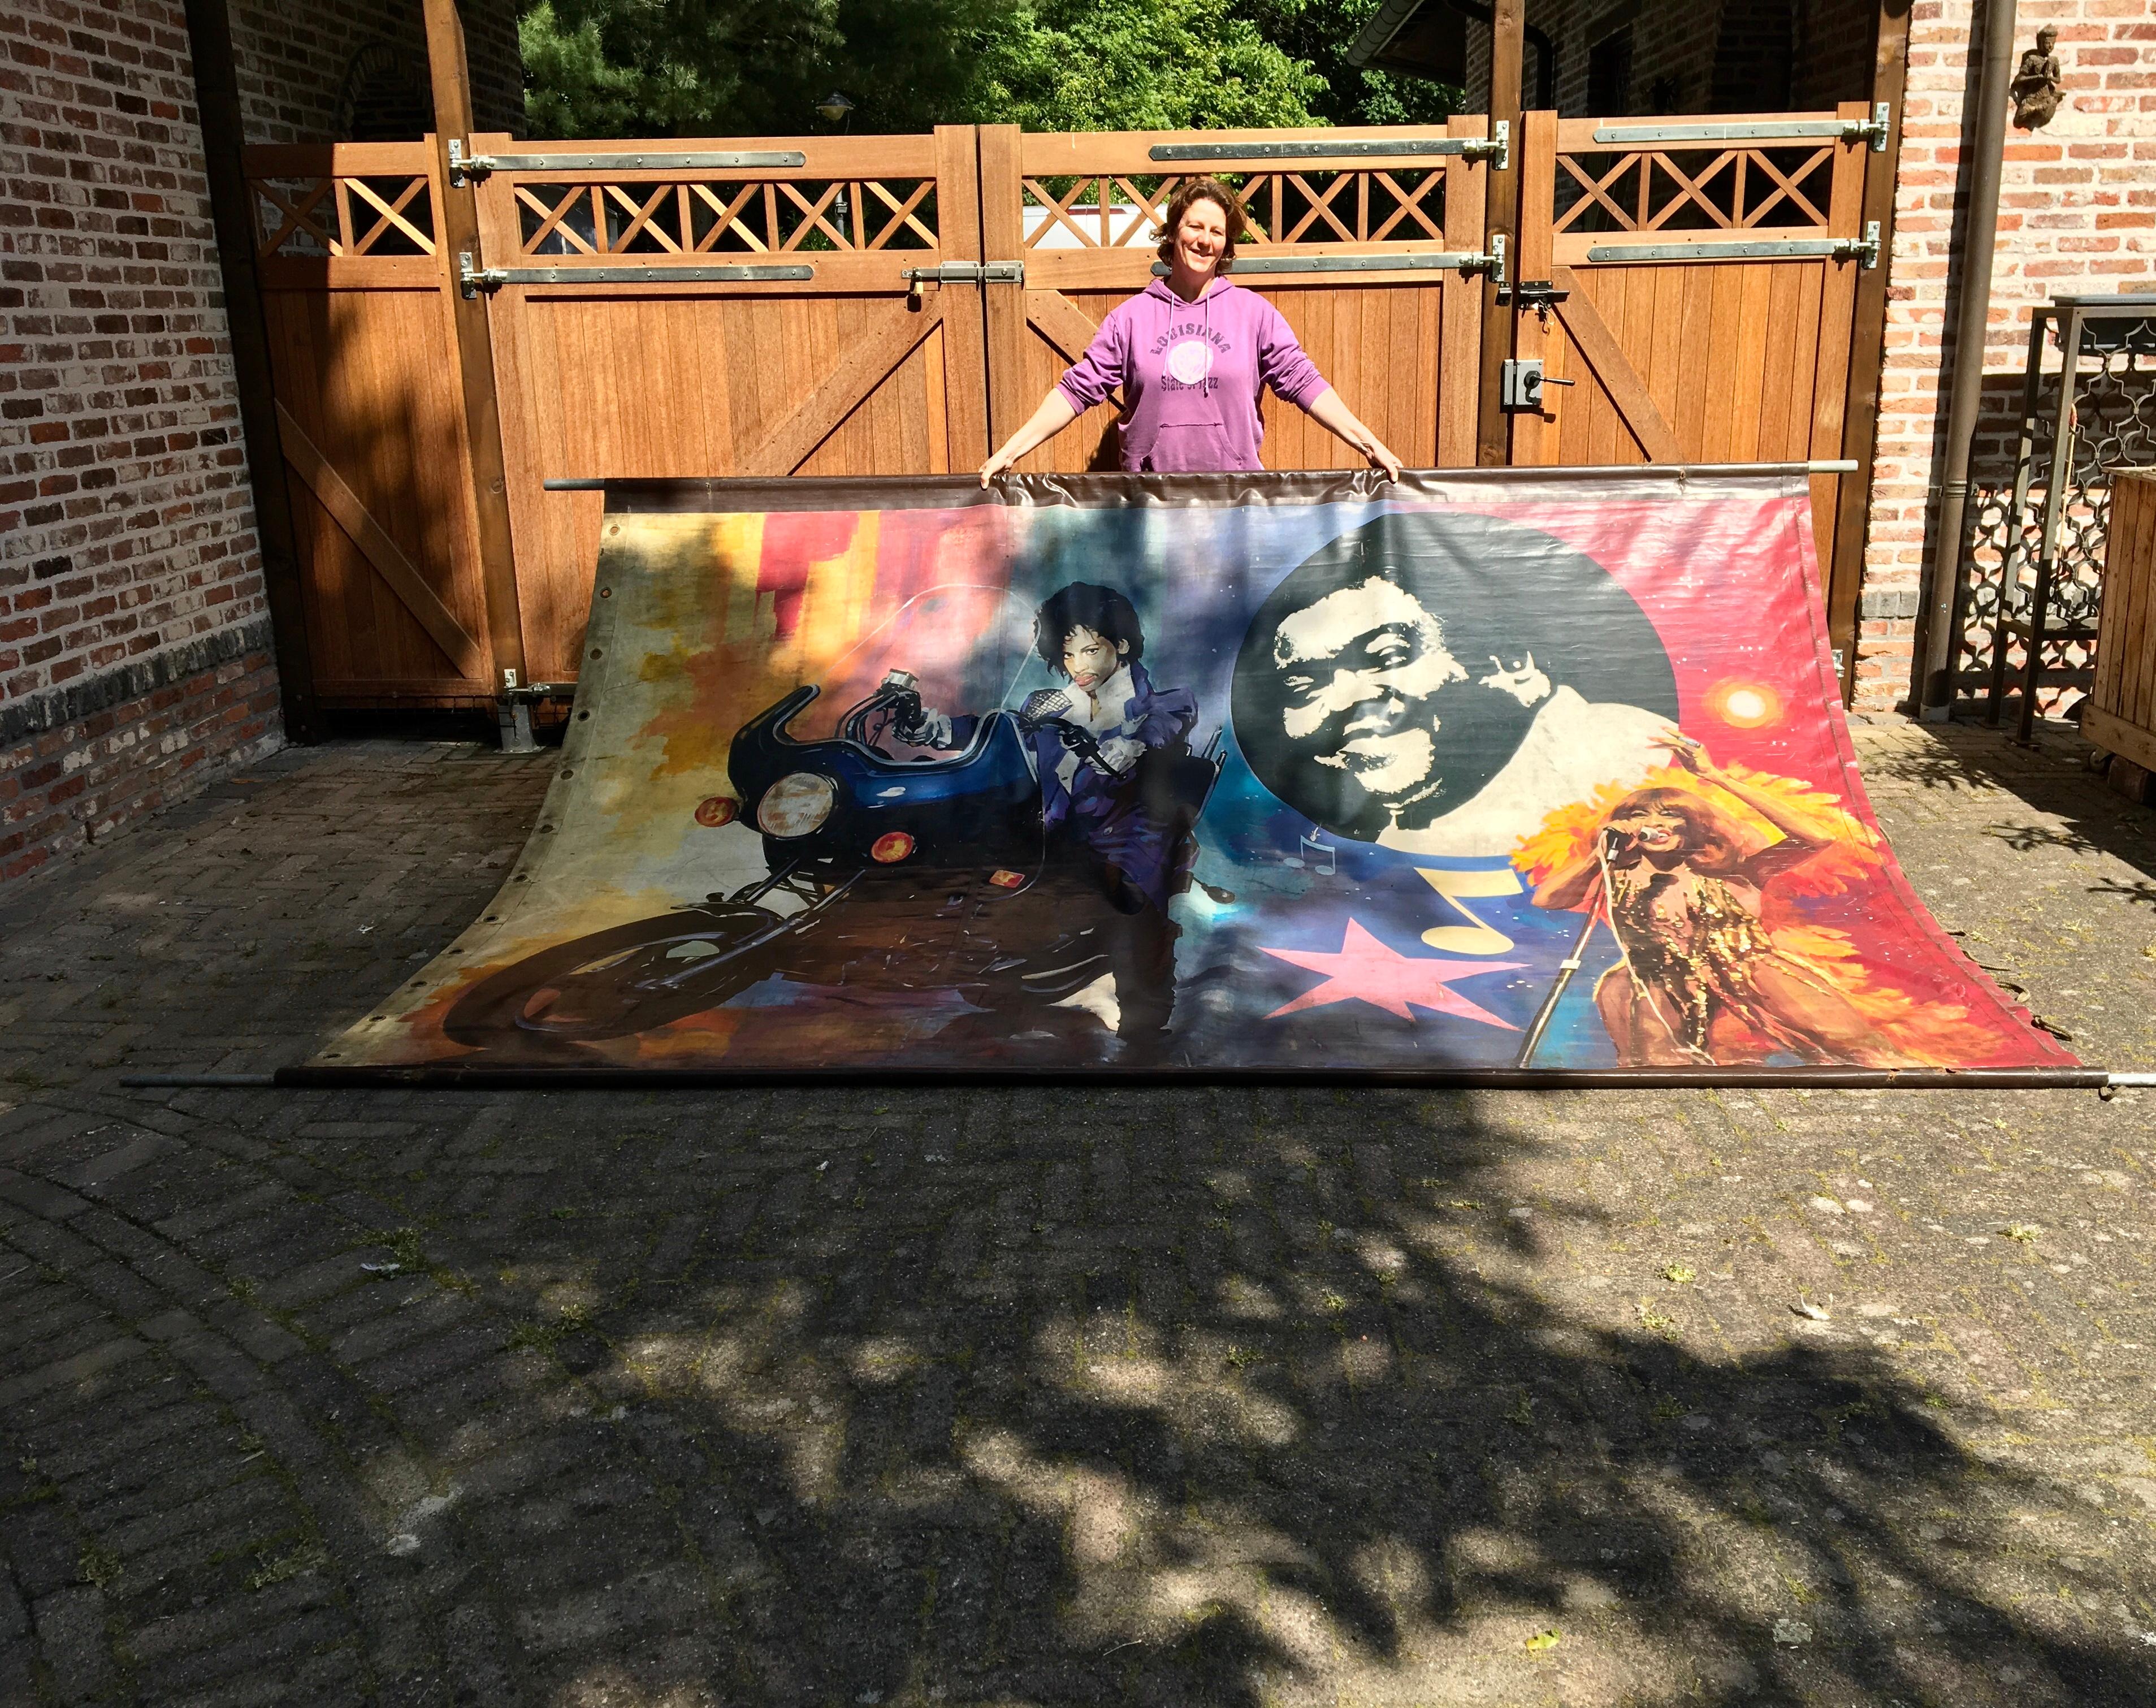 Tina Turner, Prince et Fats Domino ou Percy Sledge ( ?) , 
sur une grande bannière de carnaval. 
Bannière en toile peinte à la main utilisée dans les fêtes foraines pour une attraction d'autos tamponneuses et de voitures dodgem. Tous trois sont